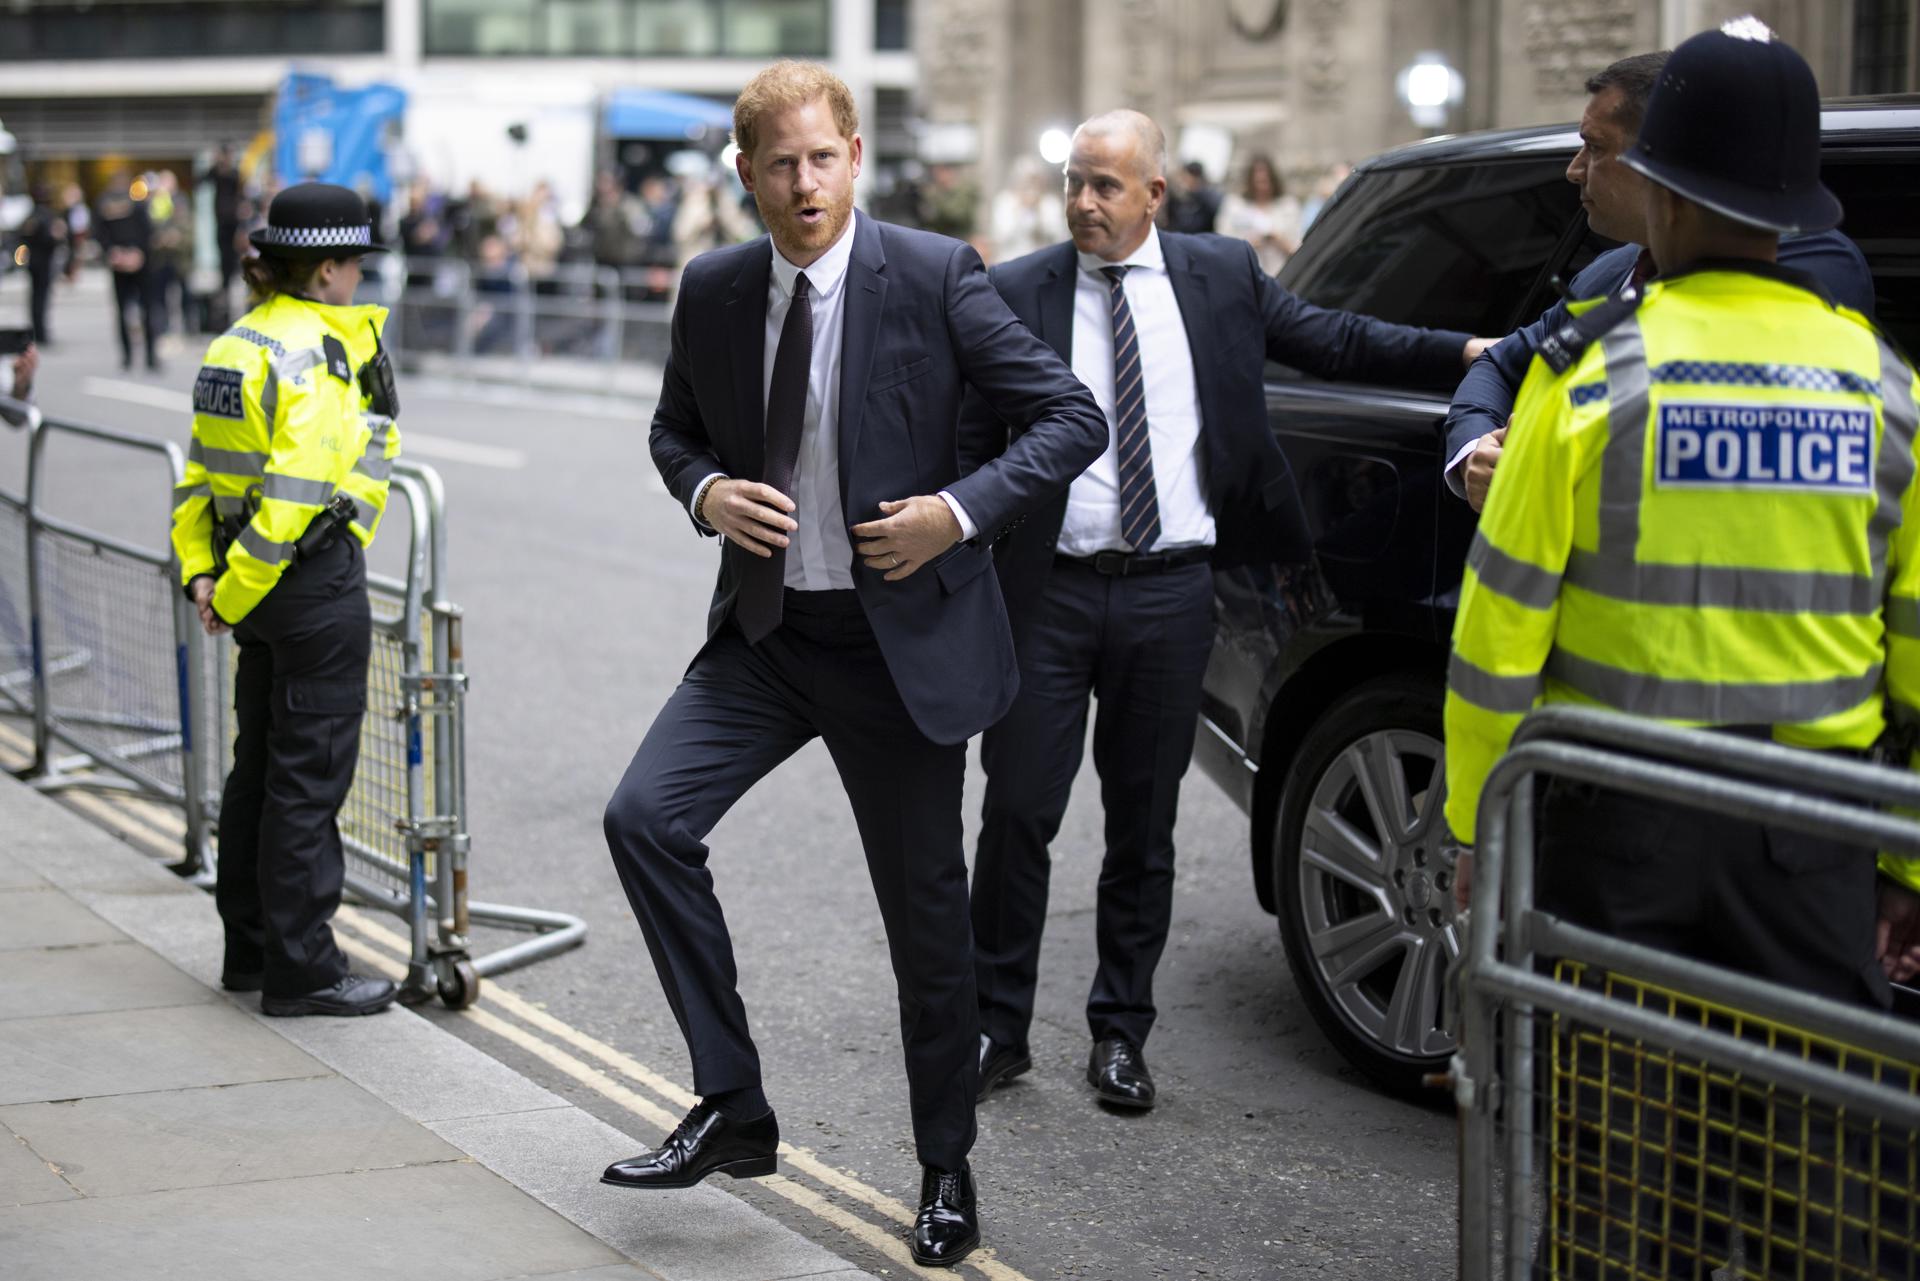 La batalla del príncipe Harry contra la prensa inglesa llega a tribunales por segundo día consecutivo